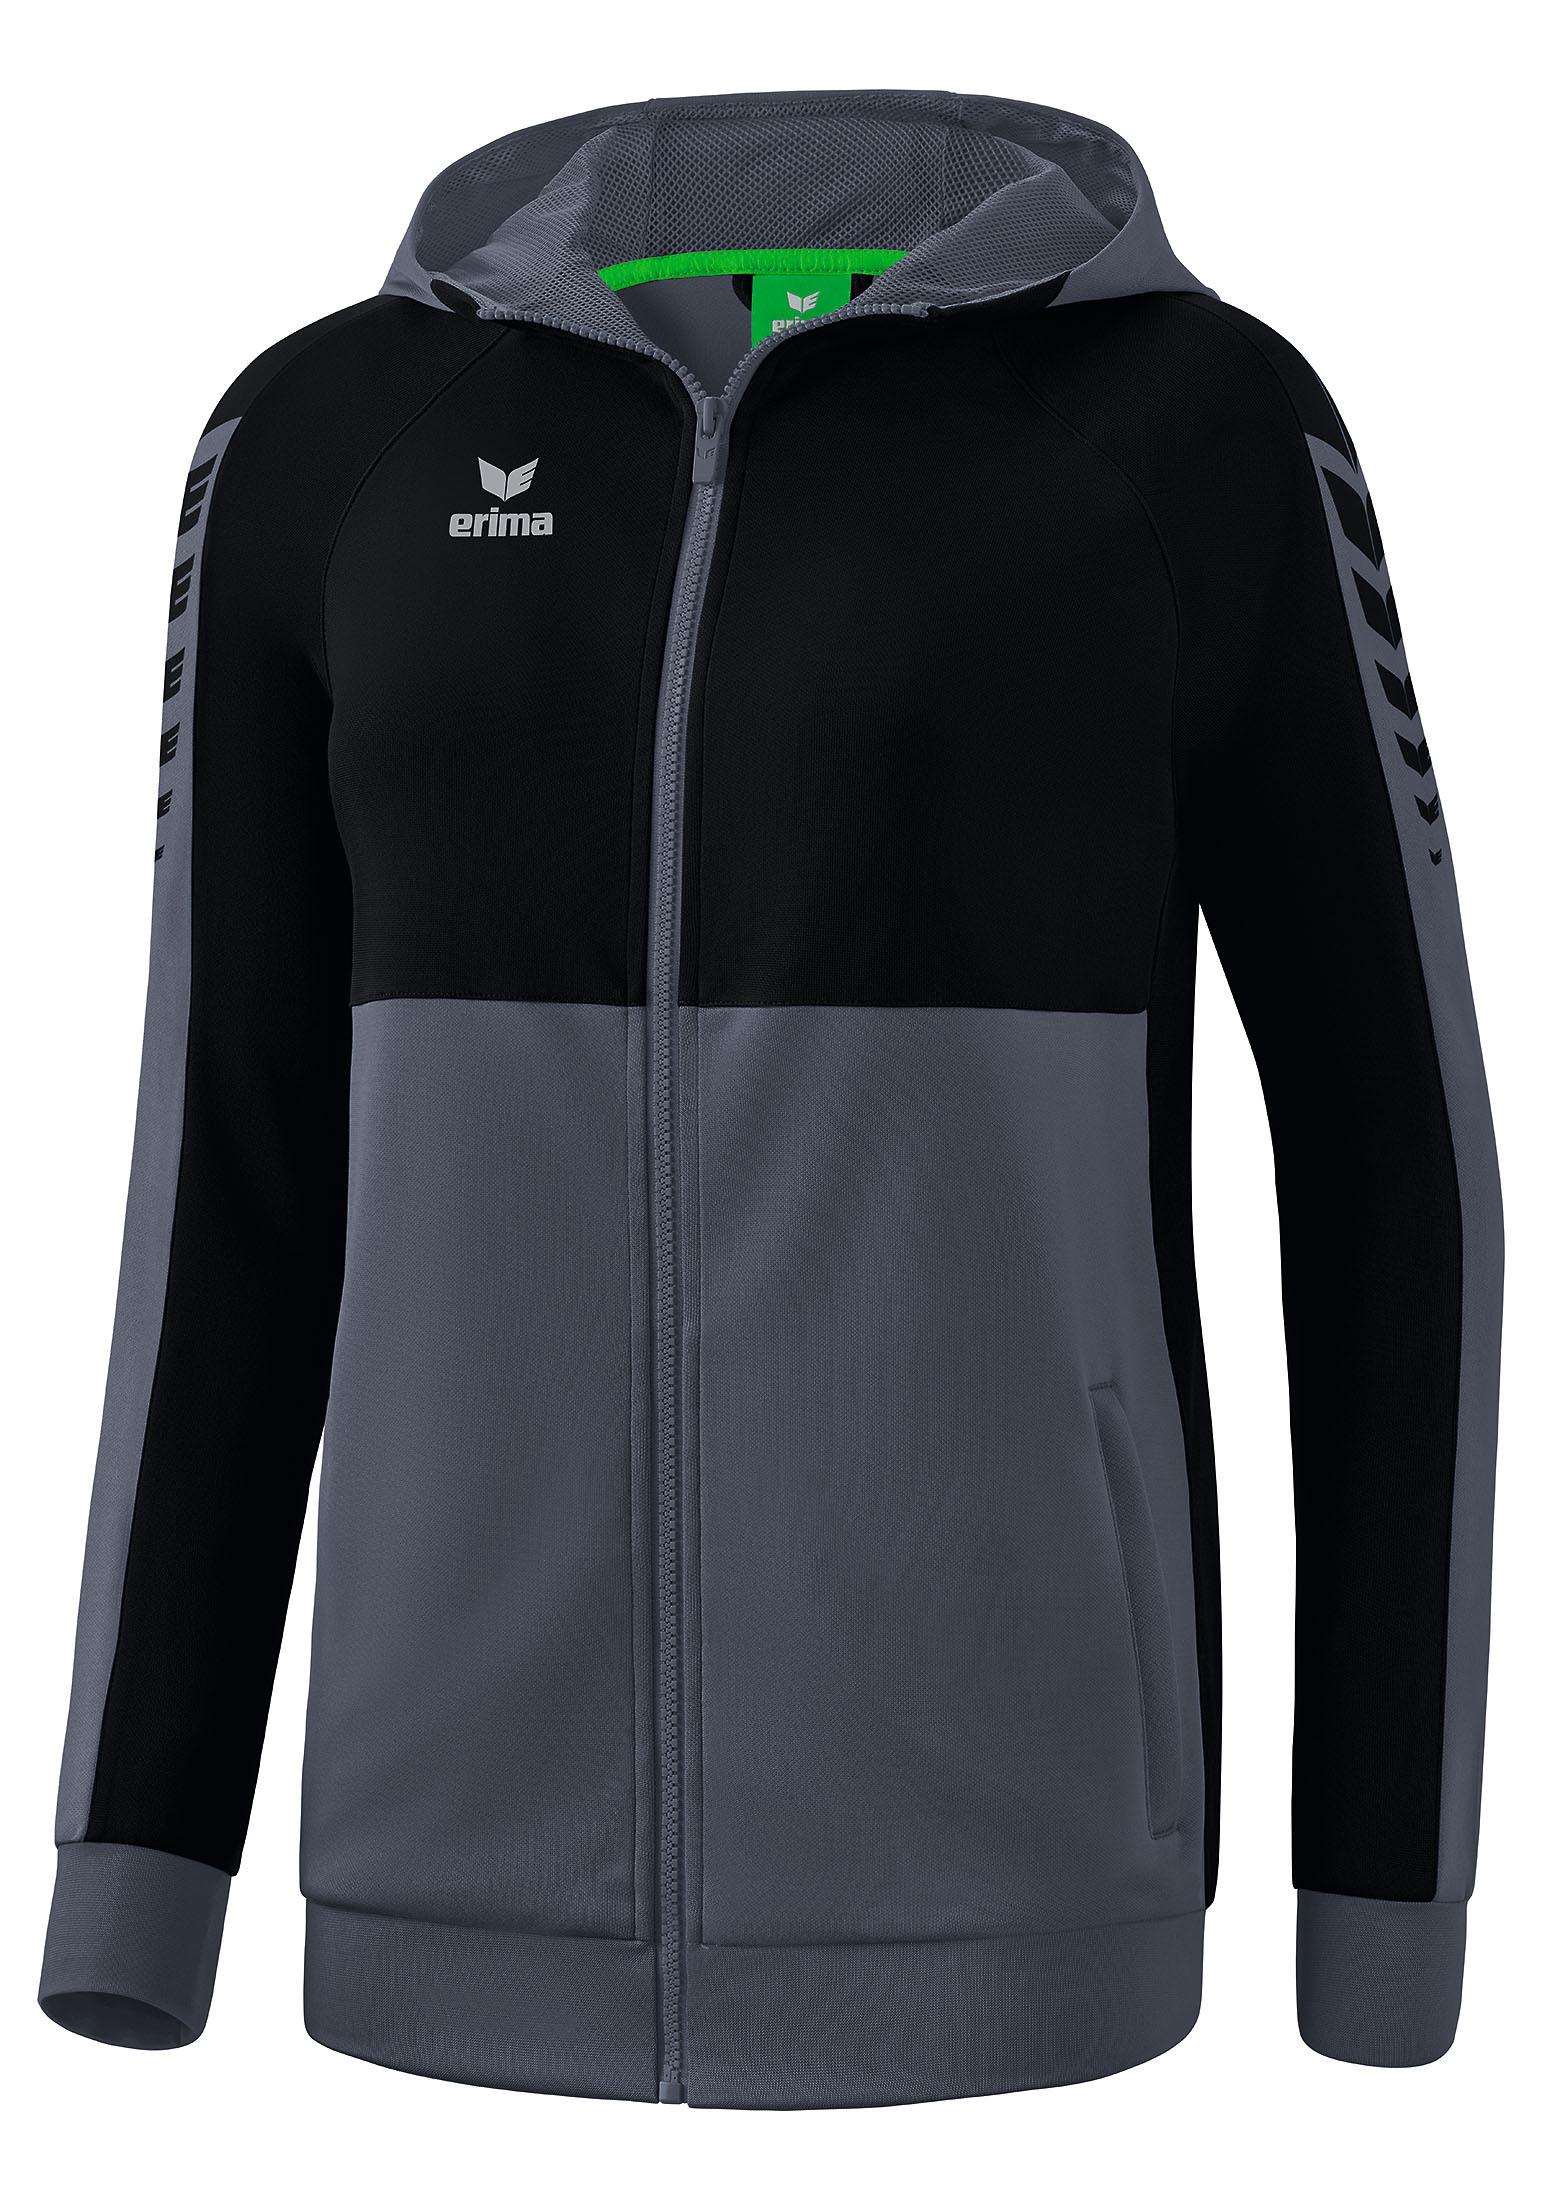 Спортивная куртка erima Six Wings, сланцево-серый/черный